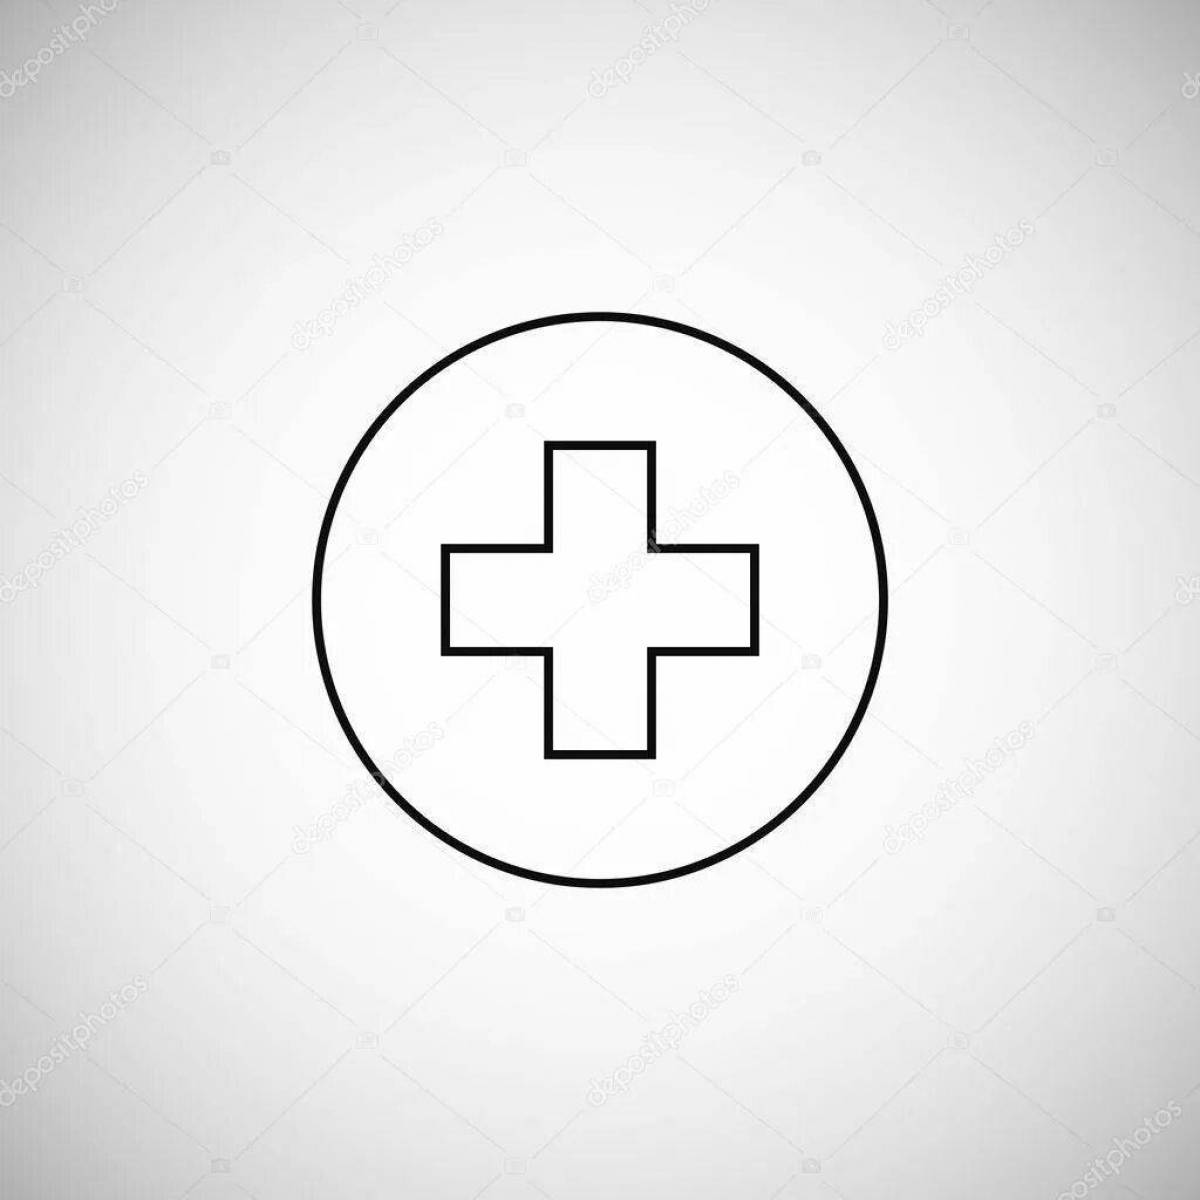 Увлекательная раскраска «медицинский крест»